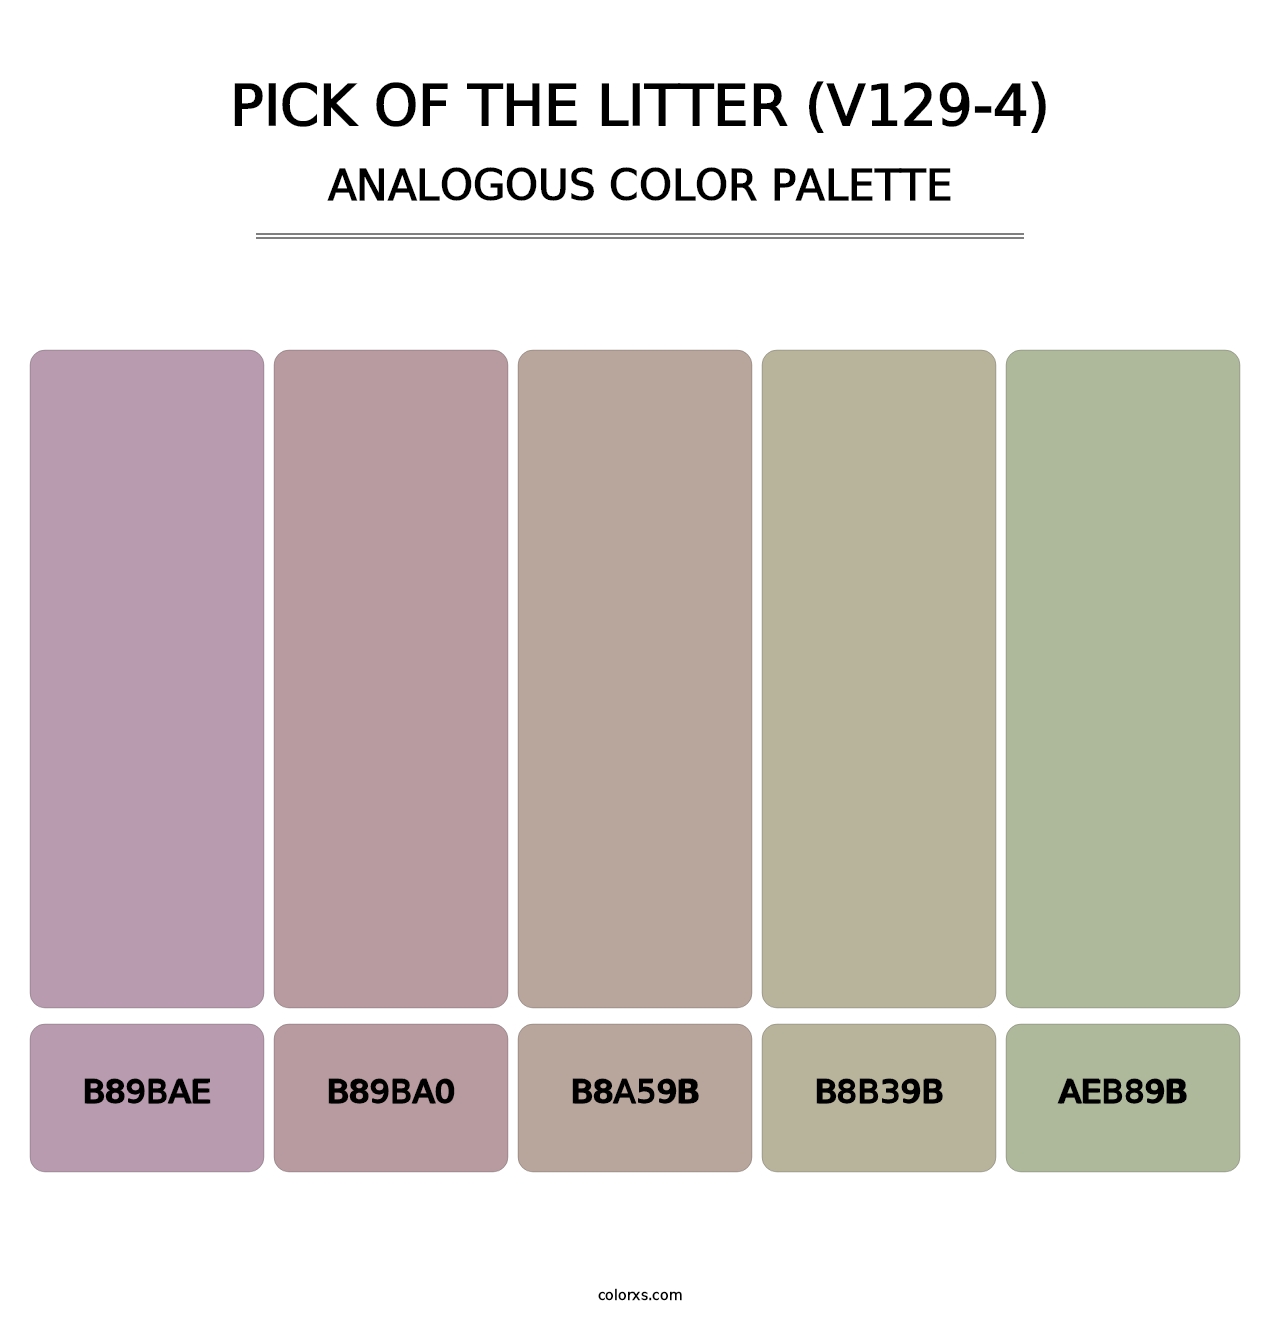 Pick of the Litter (V129-4) - Analogous Color Palette